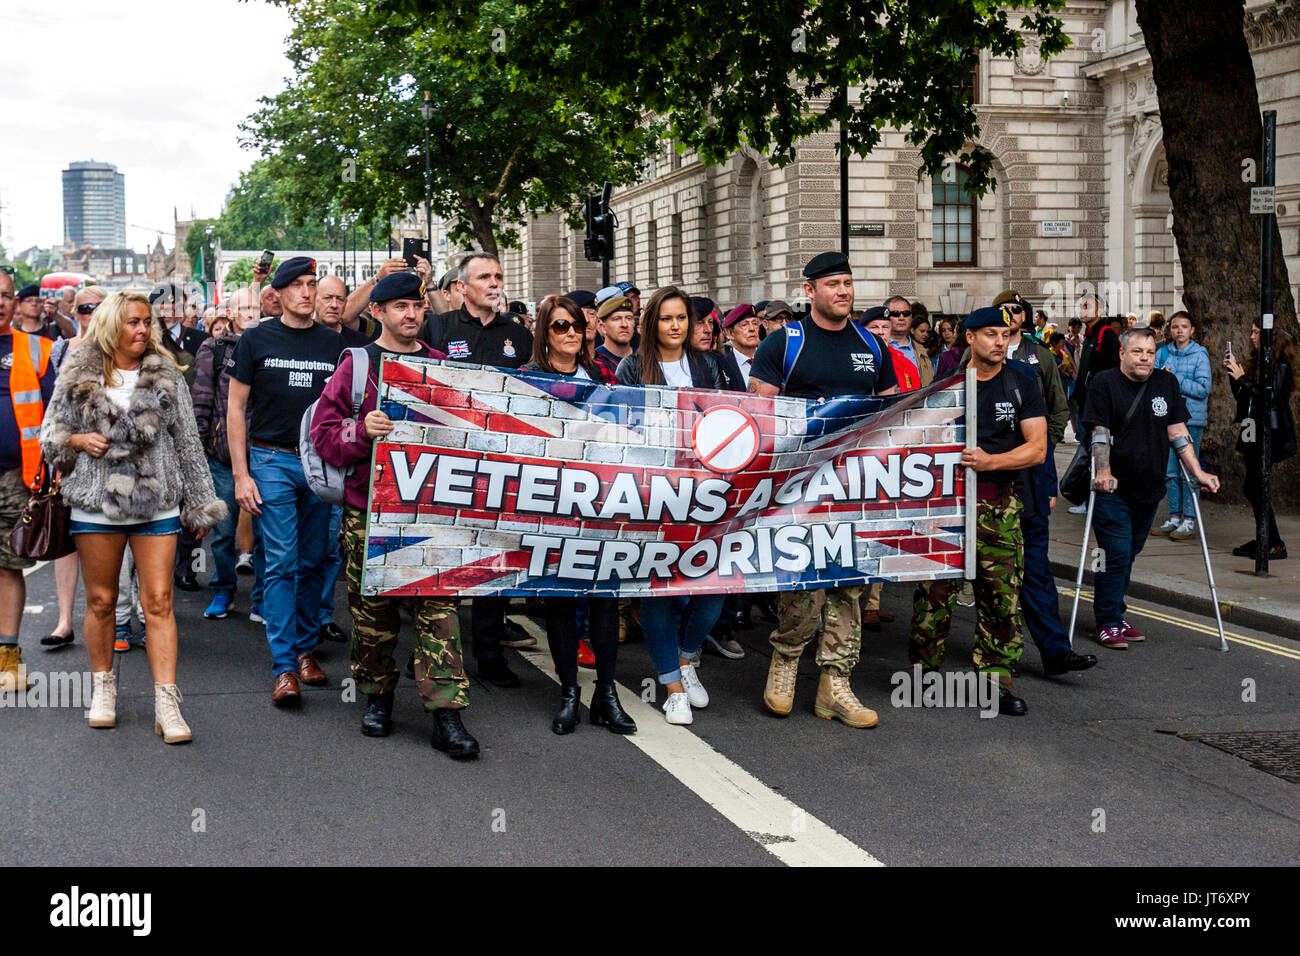 British Army Veterans März Downing Street zu fordern, dass die Regierung nicht mehr zur Bekämpfung des islamistischen Terrorismus, Whitehall, London, UK Stockfoto